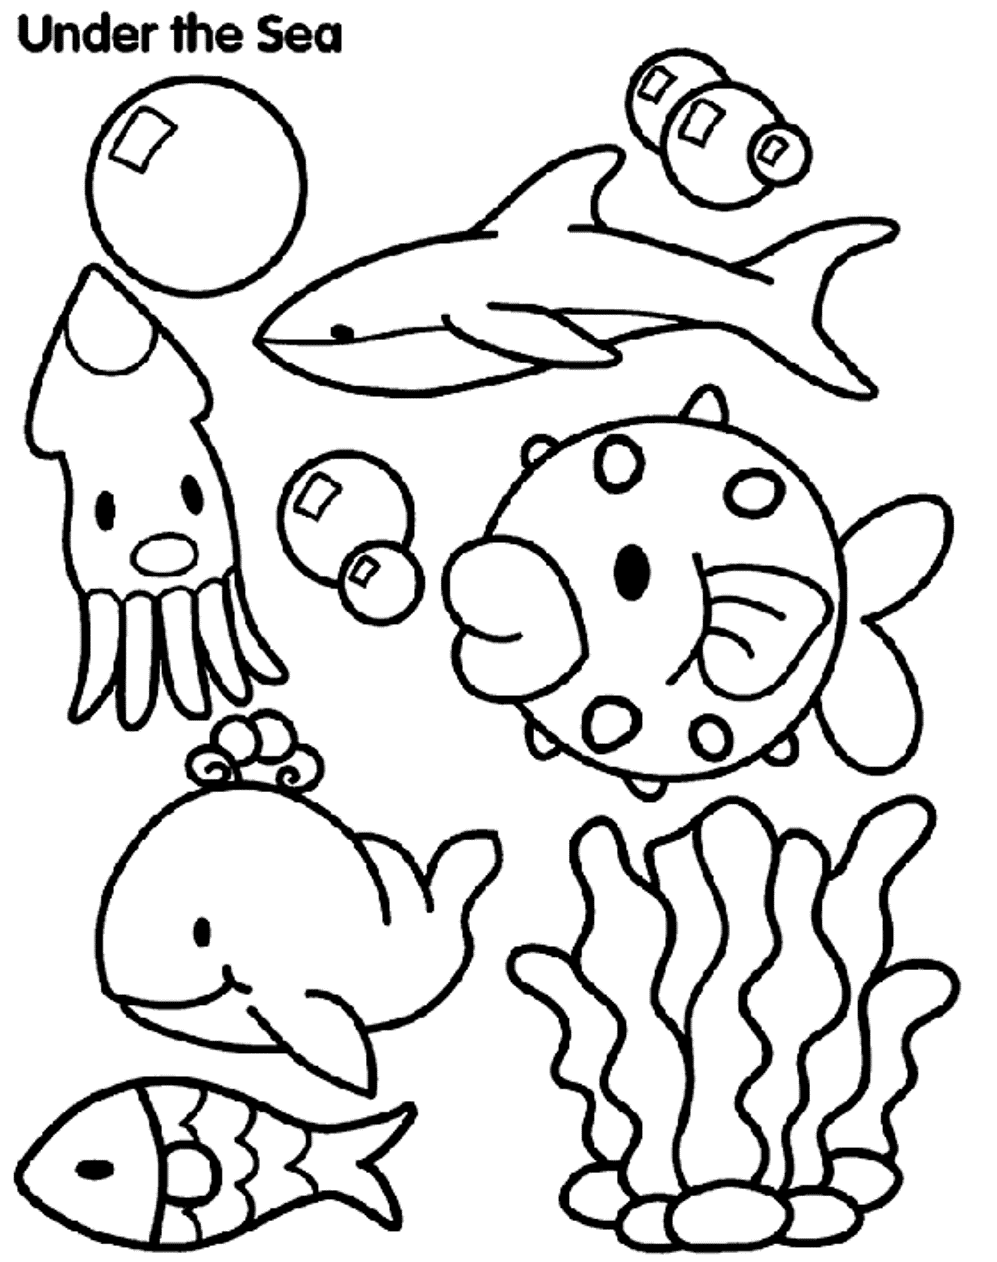 sea-animals-worksheet-free-esl-printable-worksheets-made-by-teachers